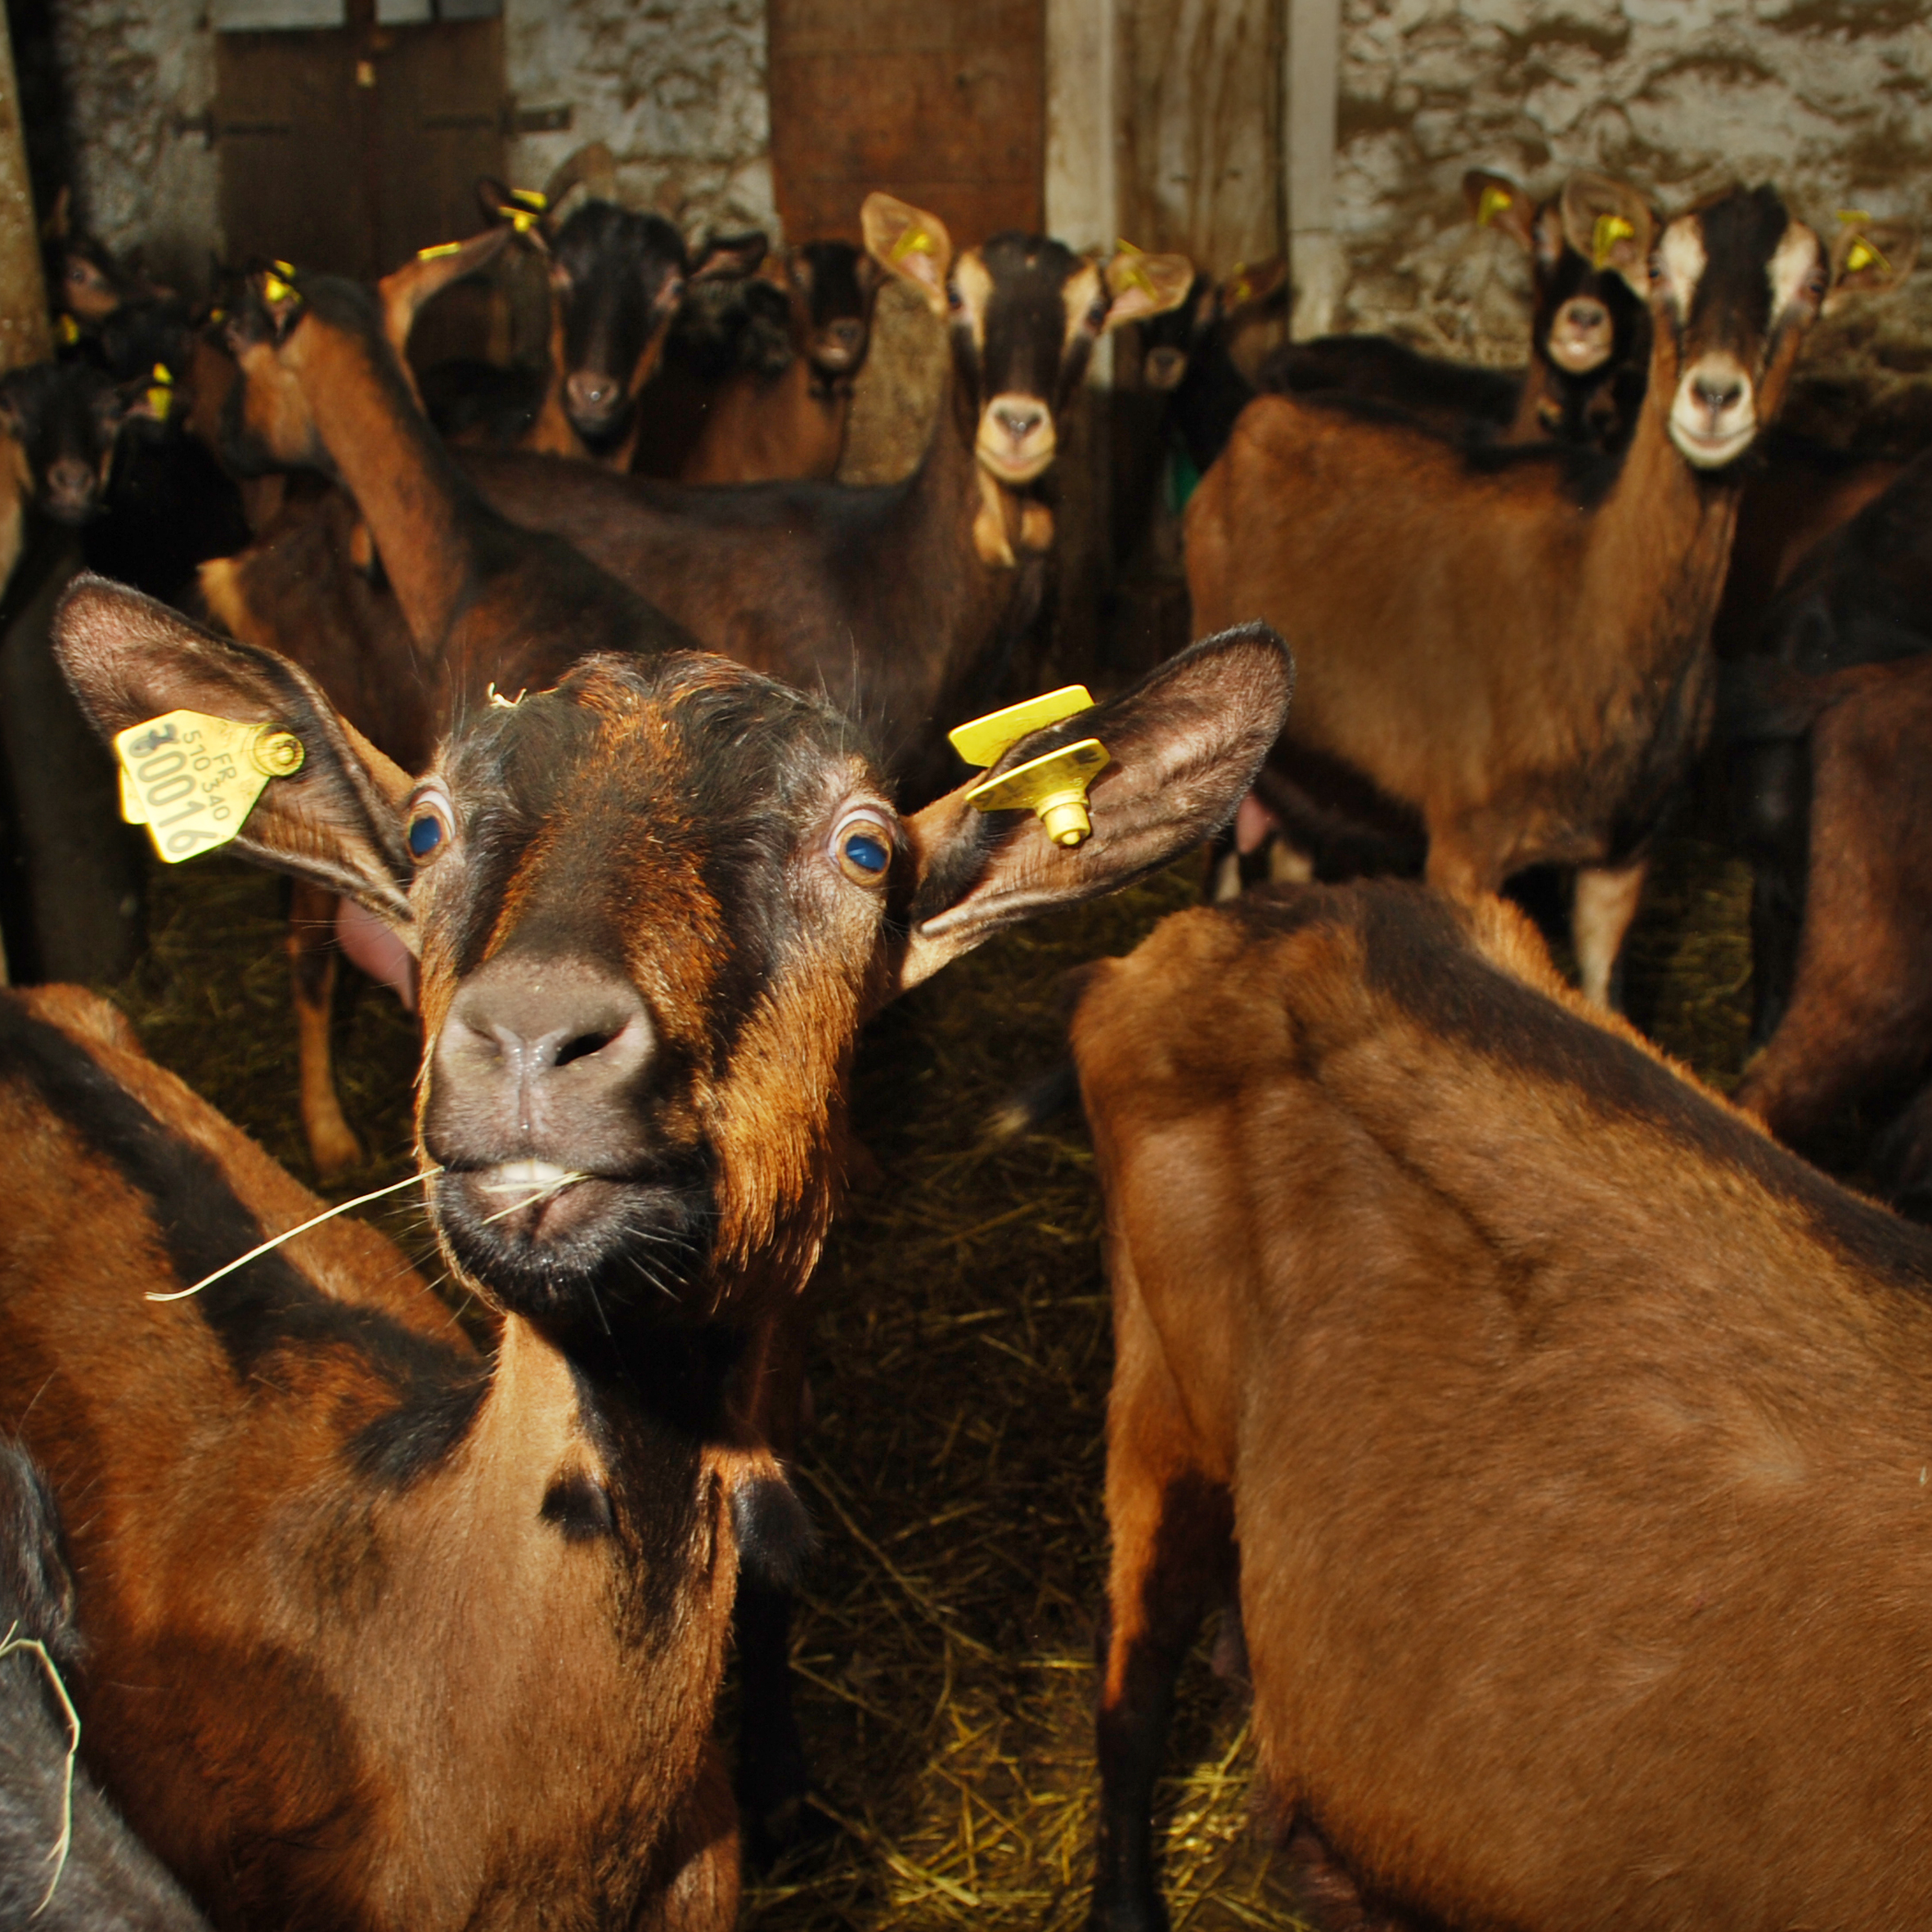 chèvres - ferme-magasin de producteurs - Gilly sur Isère / Albertville- savoie - terroir